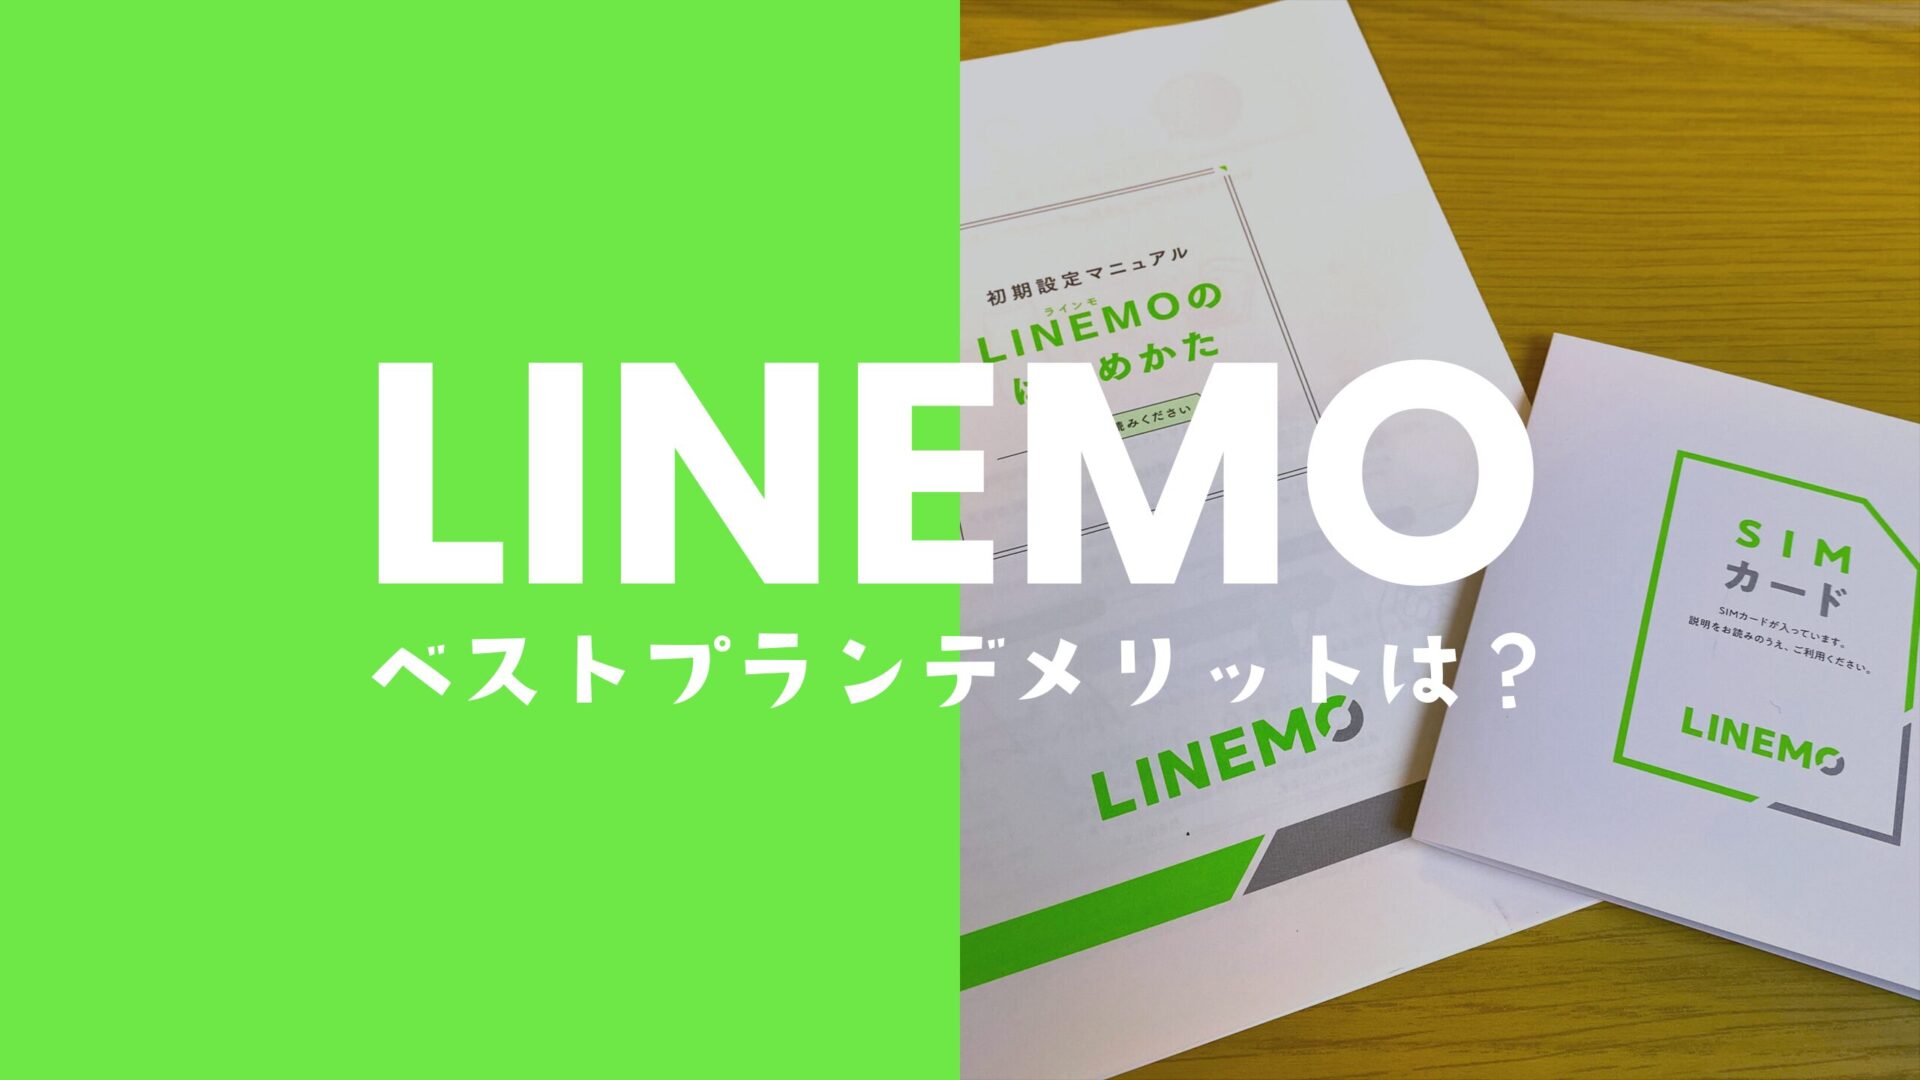 LINEMO(ラインモ)のベストプランは改悪？デメリットについて解説。のサムネイル画像